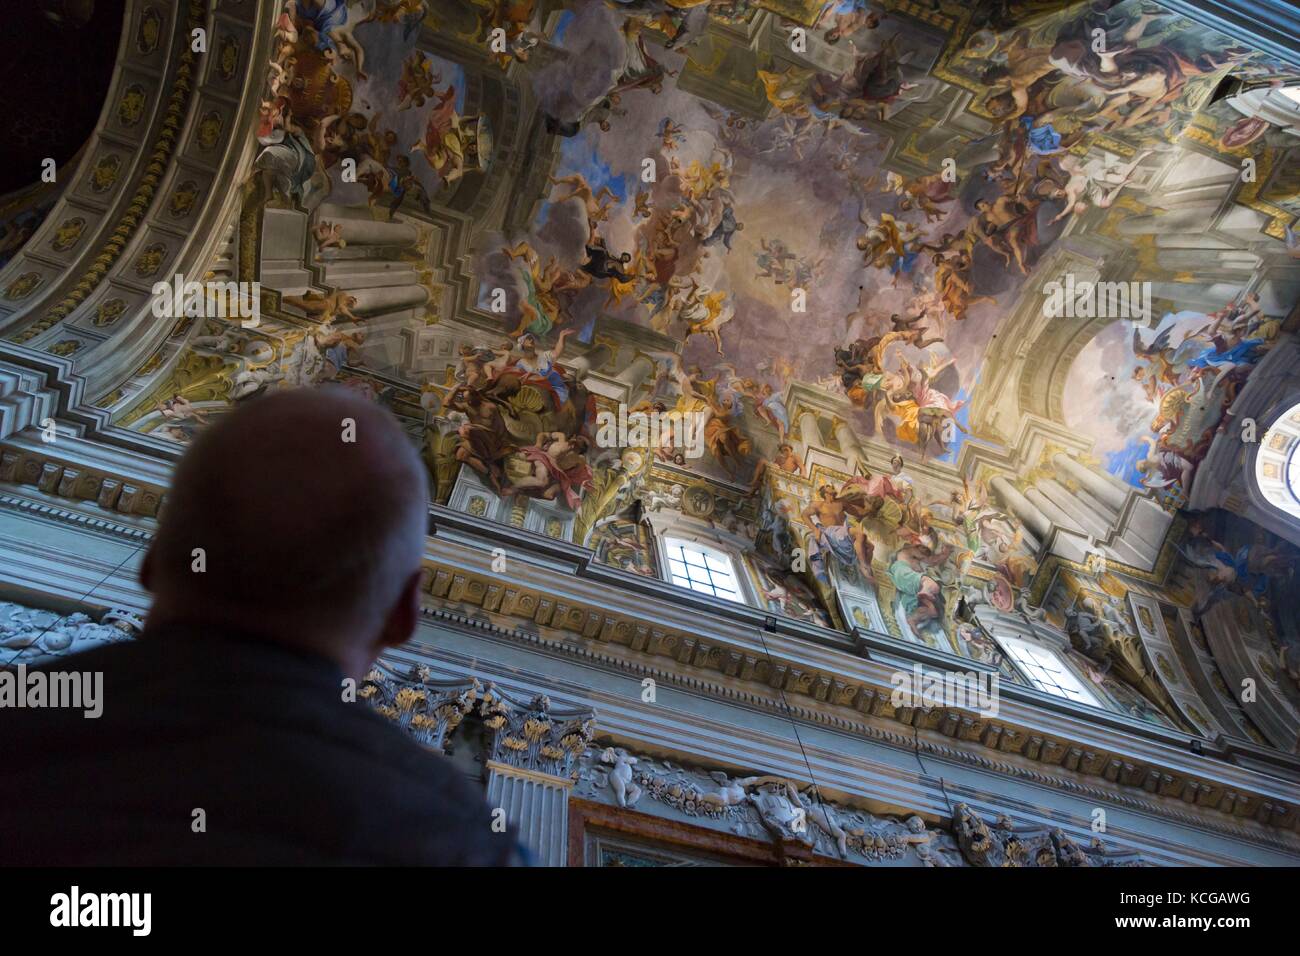 Trompe-l'oeil-Decke Fresko von Andrea Pozzo, die Kirche Sant'Ignazio, Rom, Italien. Stockfoto